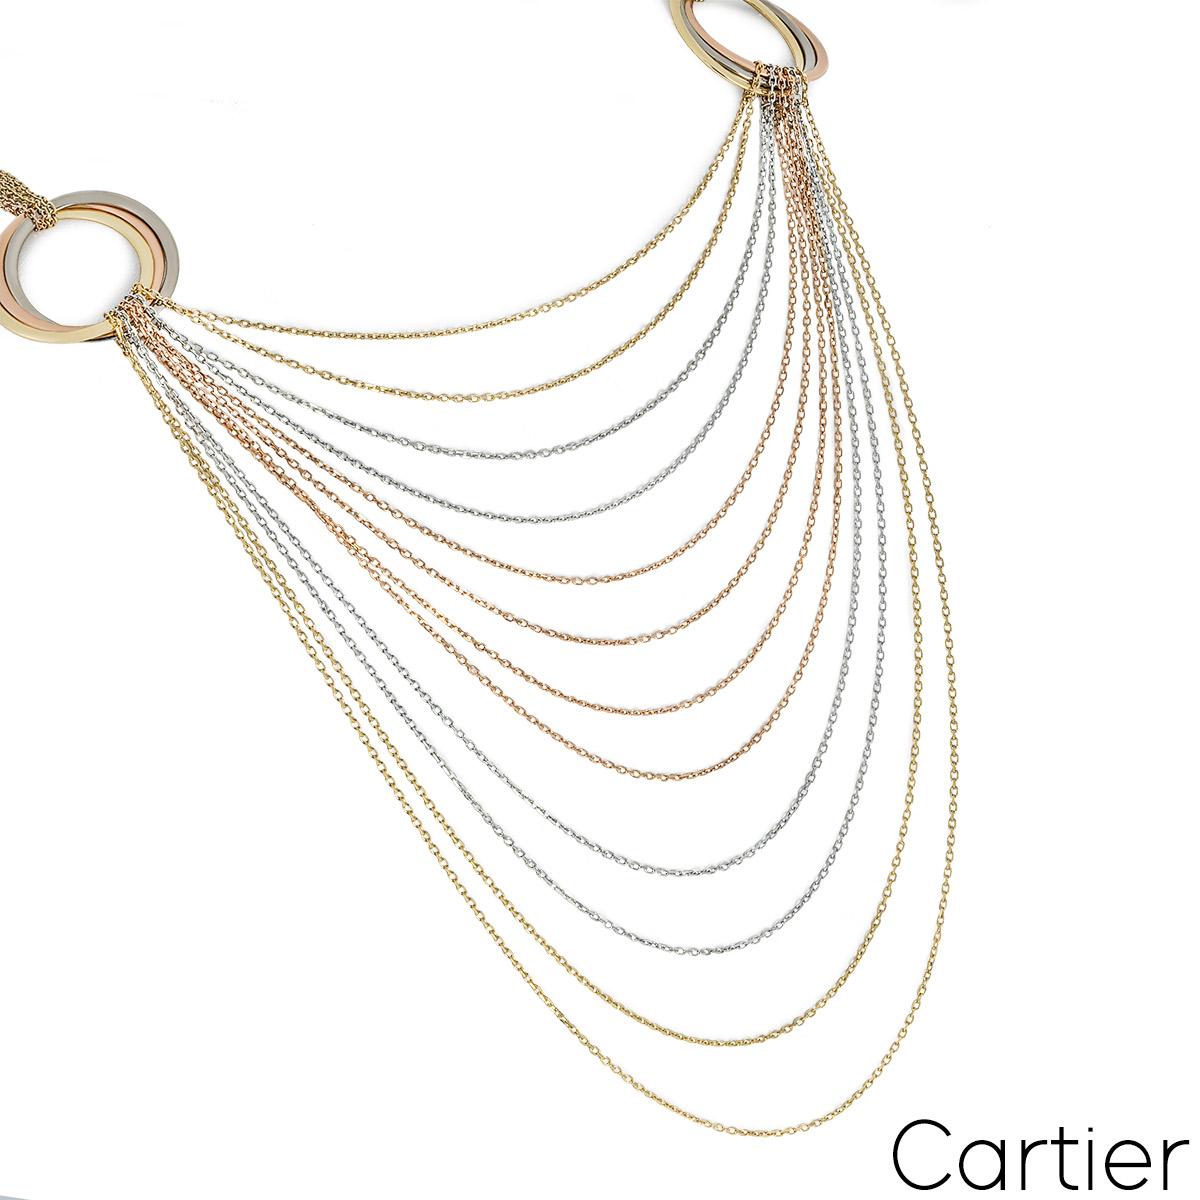 Collier en or tricolore 18 carats de Cartier, issu de la collection Trinity de Cartier. Le collier est composé de 12 chaînes graduées en or jaune, en or rose et en or blanc, suspendues à deux motifs iconiques de la Trinité régulièrement espacés. Le